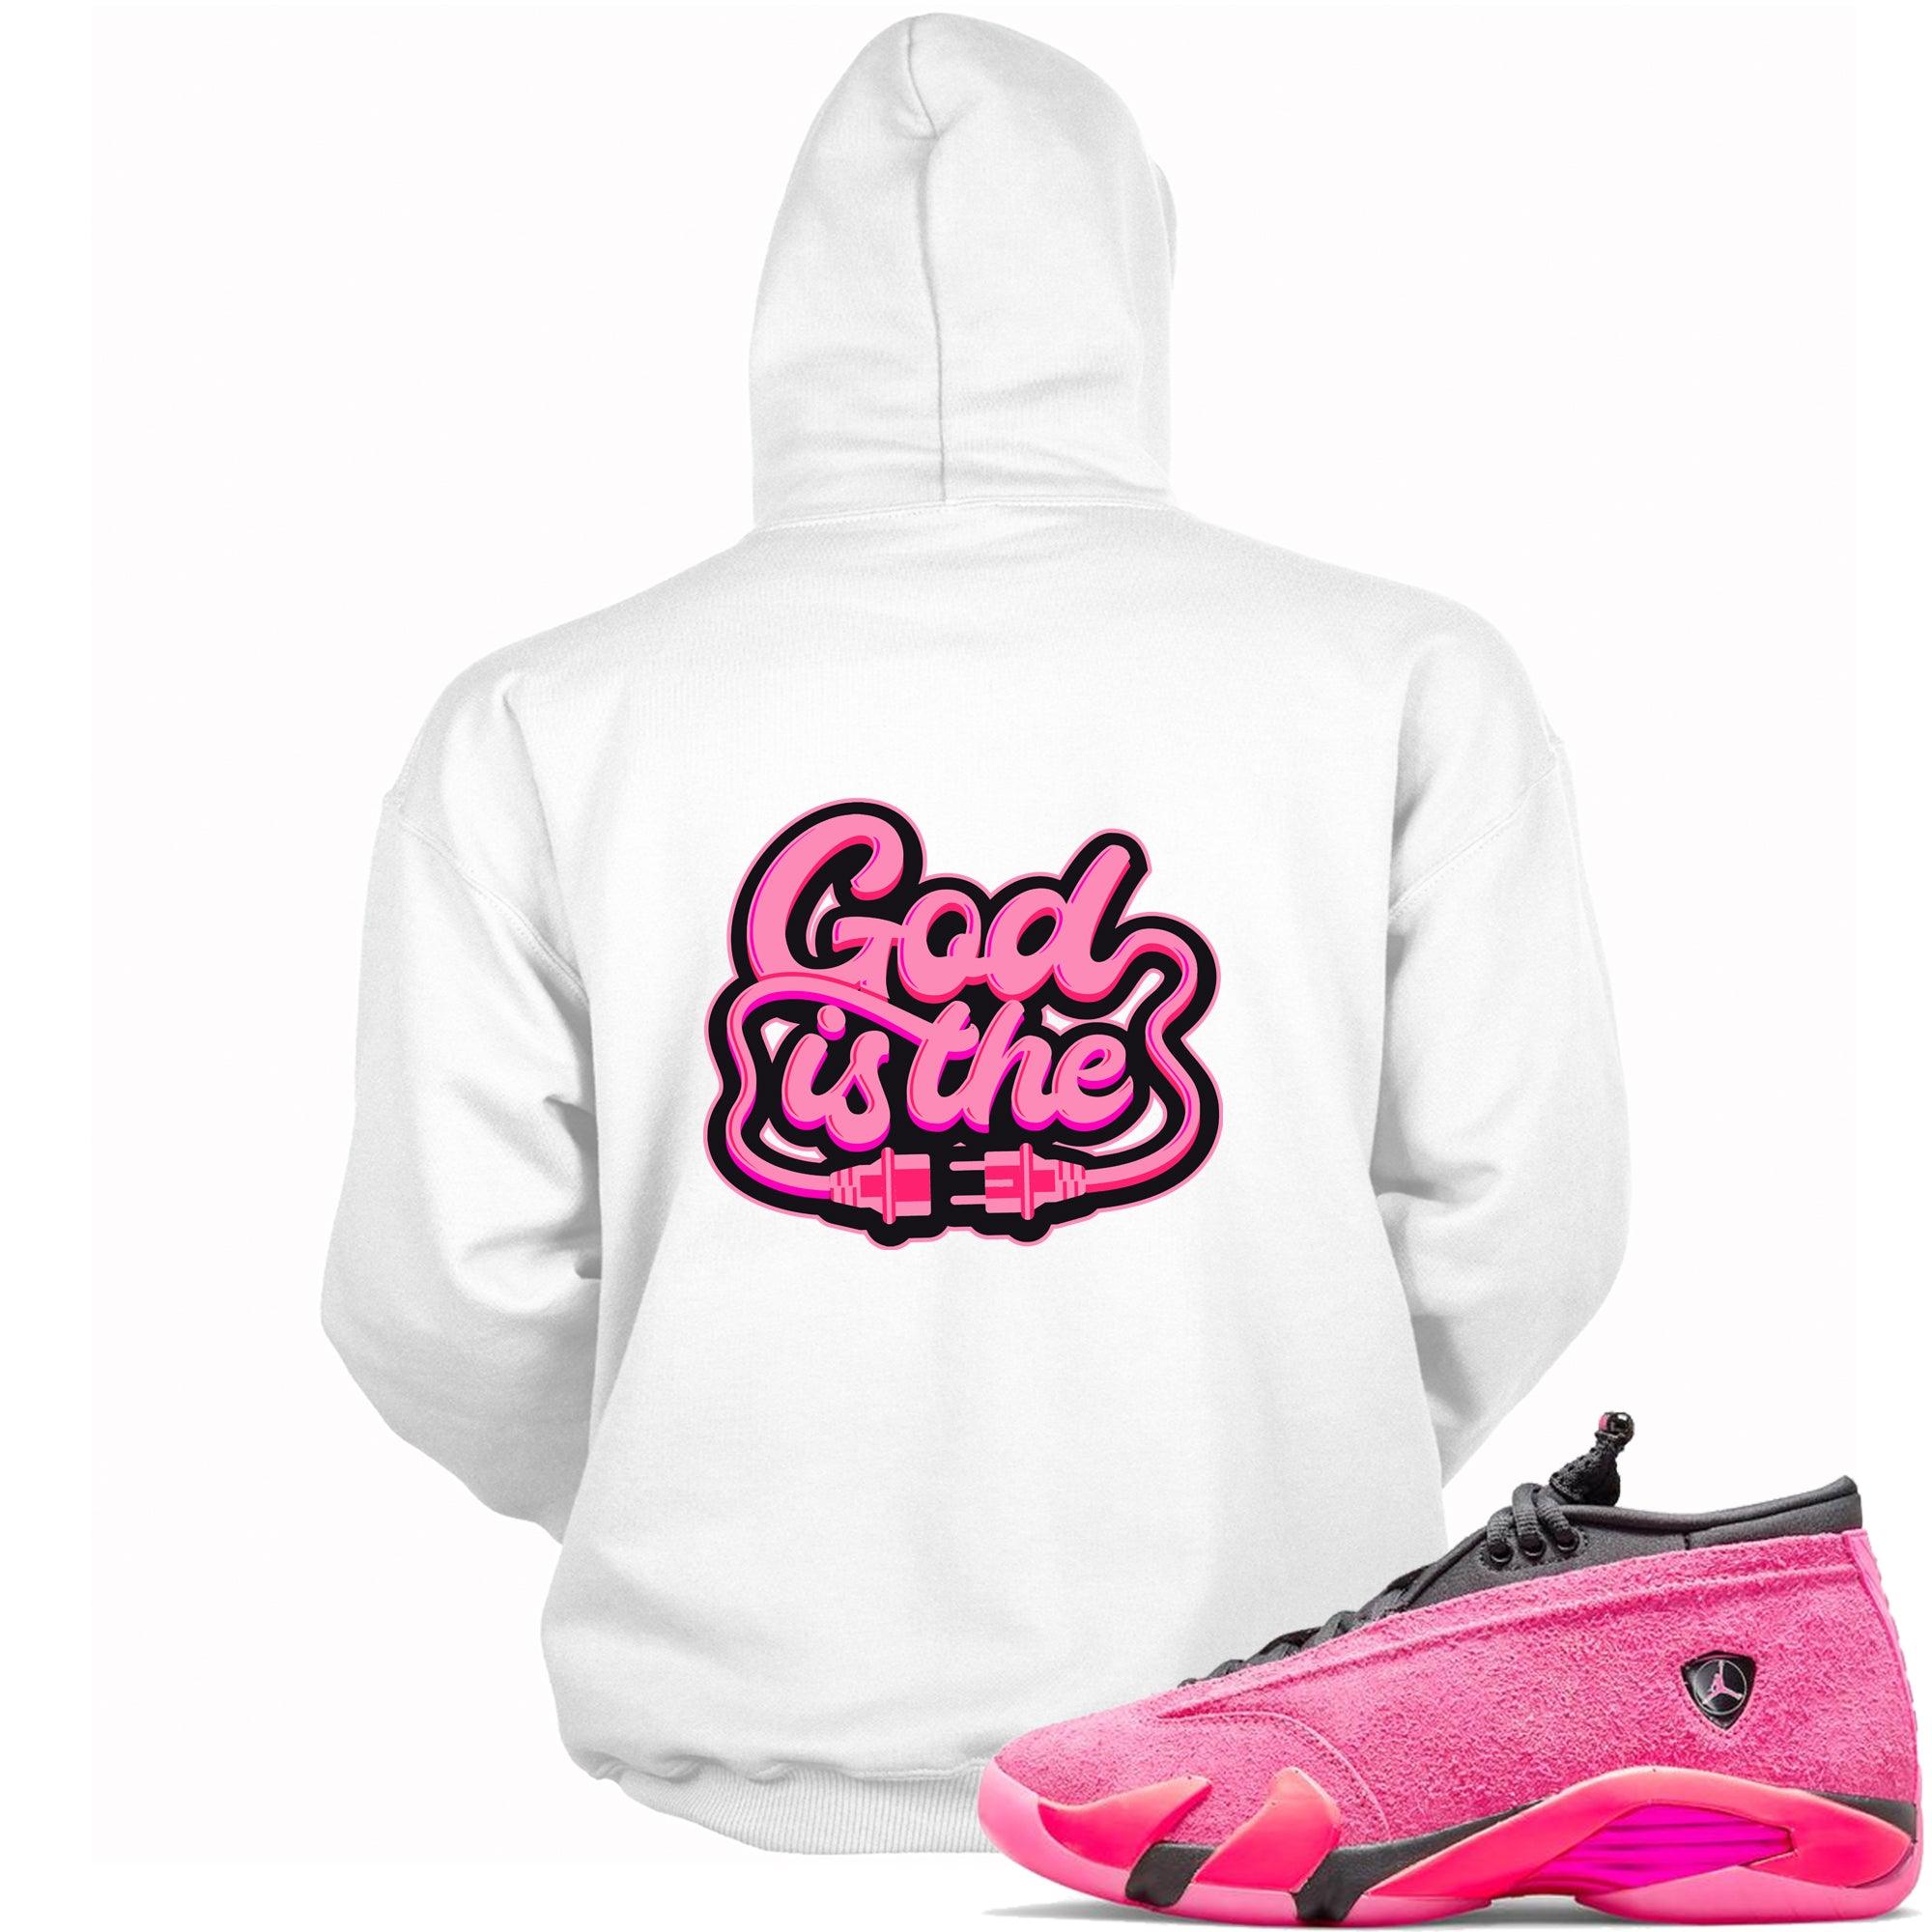 God Is Hoodie AJ 14 Low Shocking Pink photo